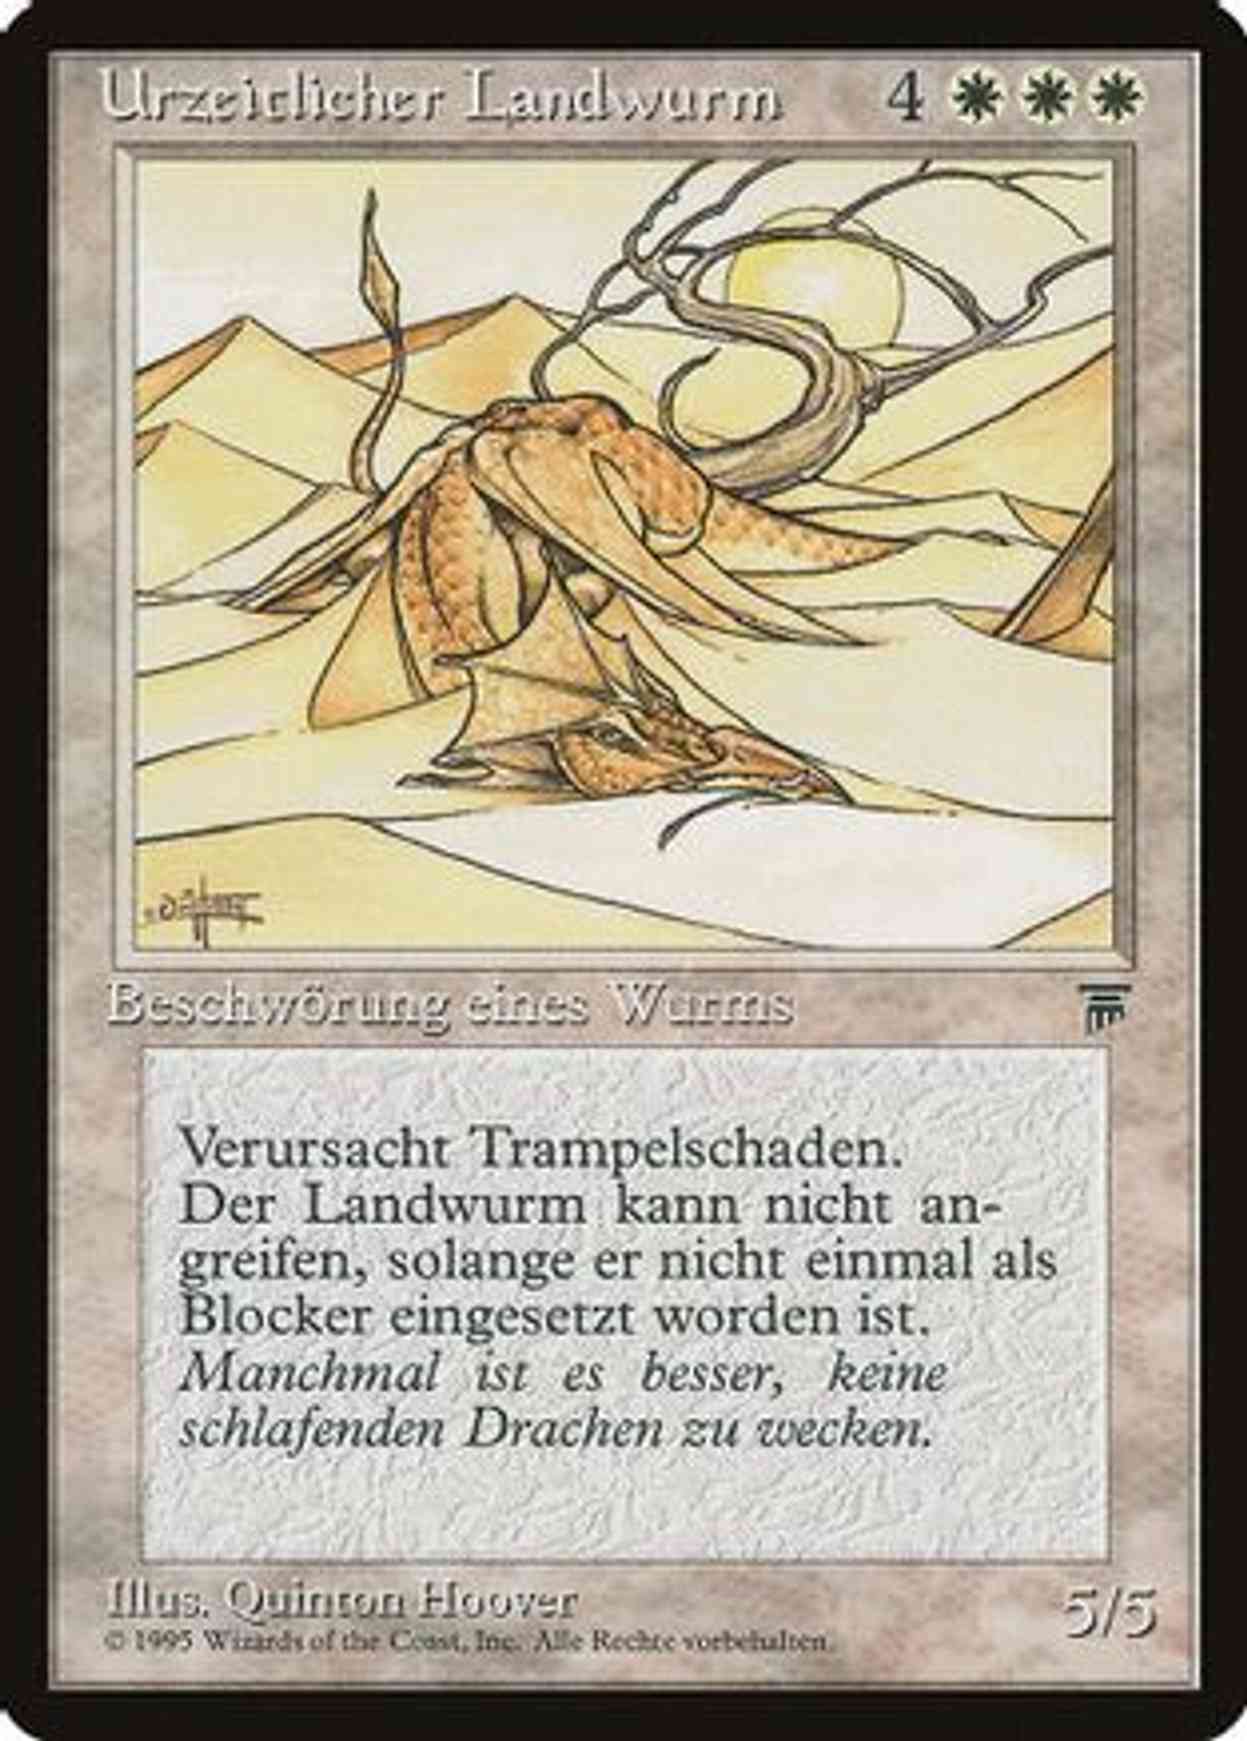 Elder Land Wurm (German) - "Urzeitlicher Landwurm" magic card front